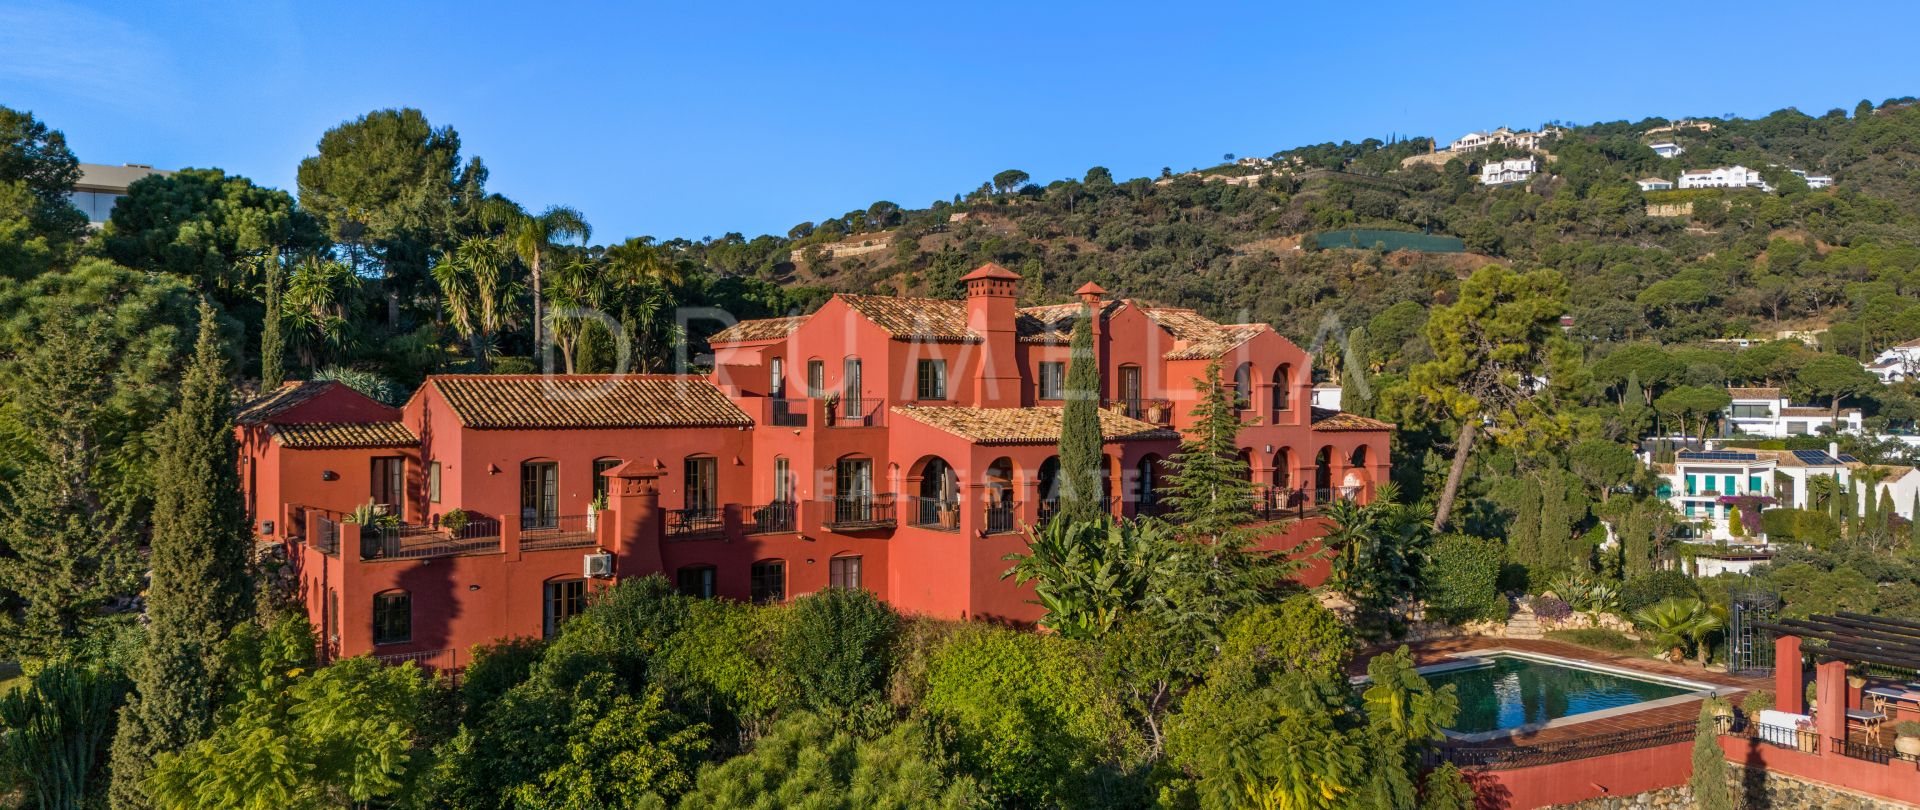 Villa de style andalou à vendre au cœur d'El Madroñal, Behanavis